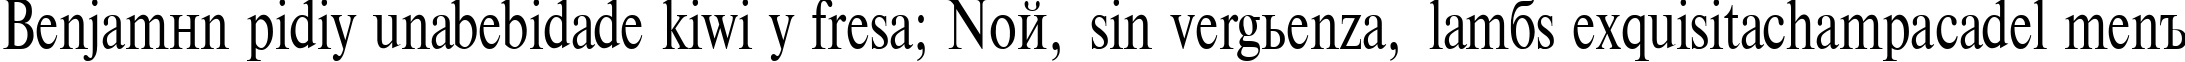 Пример написания шрифтом TimesET75n текста на испанском